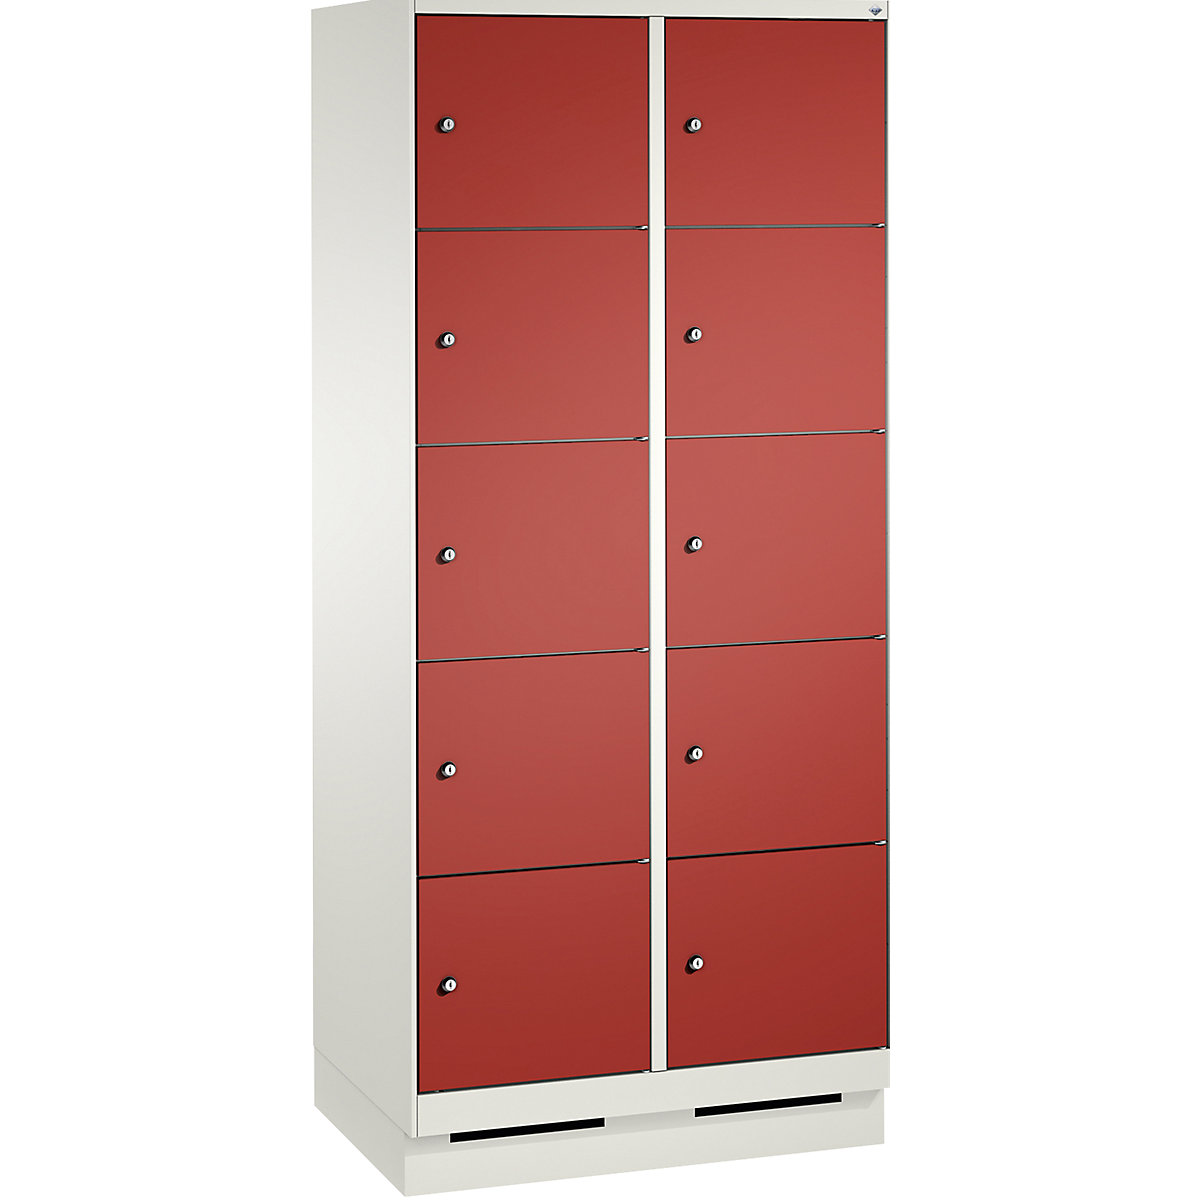 Armoire à casiers sur socle EVOLO – C+P, 2 compartiments, 5 casiers chacun, largeur compartiments 400 mm, blanc trafic / rouge feu-12